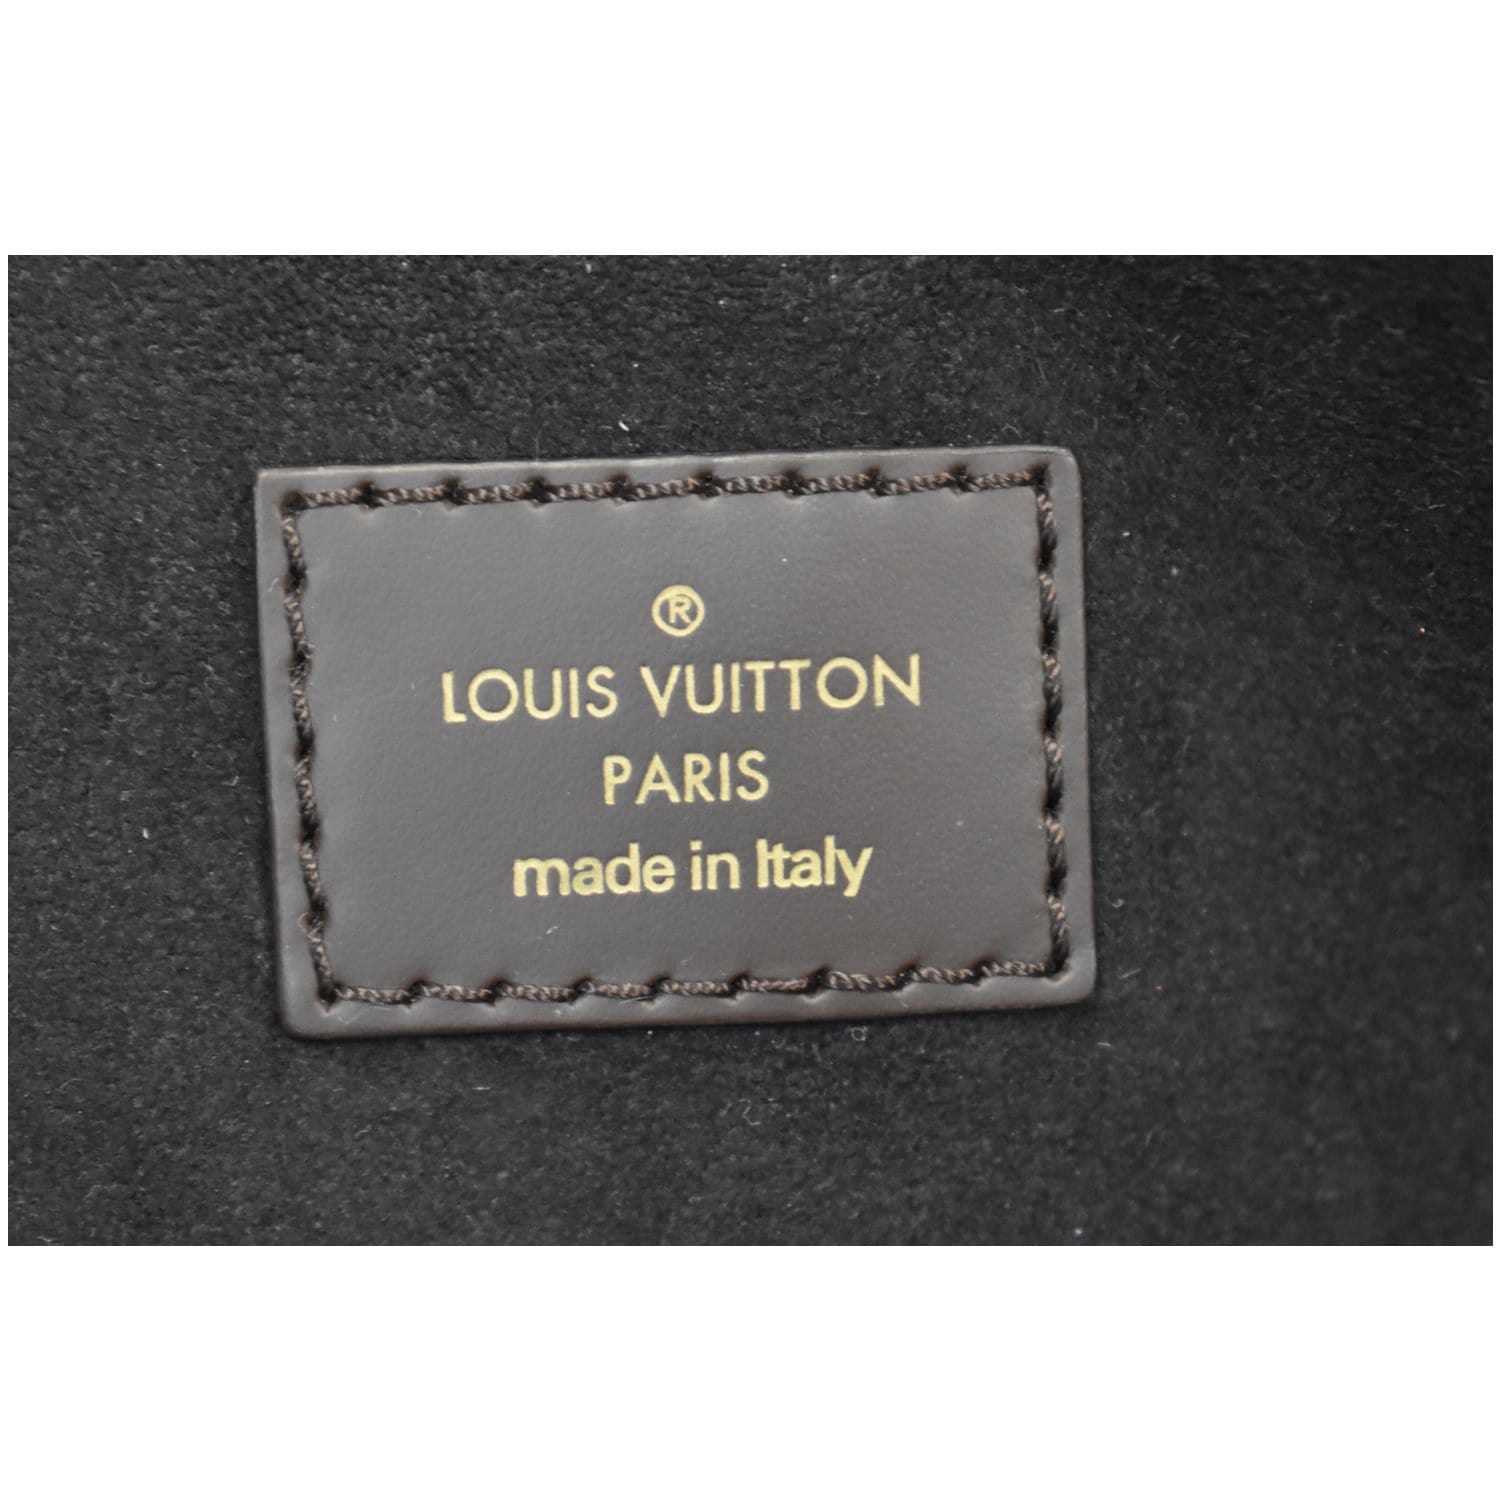 Louis Vuitton - Normandy Damier Canvas Taurillon Leather Burgundy